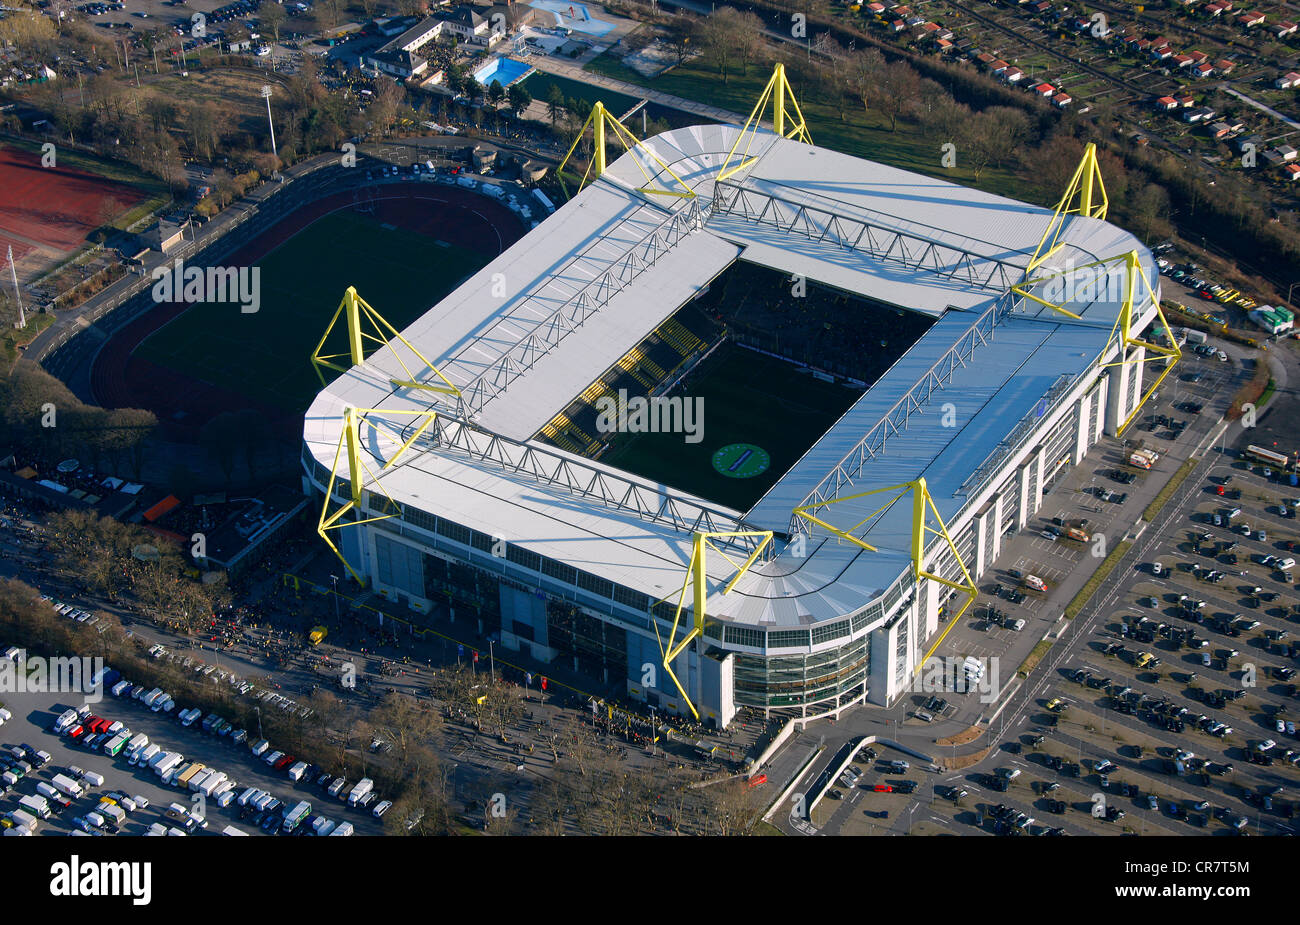 Antenne zu sehen, Signal-Iduna-Park Stadion, Dortmund, Ruhrgebiet Region, North Rhine-Westphalia, Deutschland, Europa Stockfoto